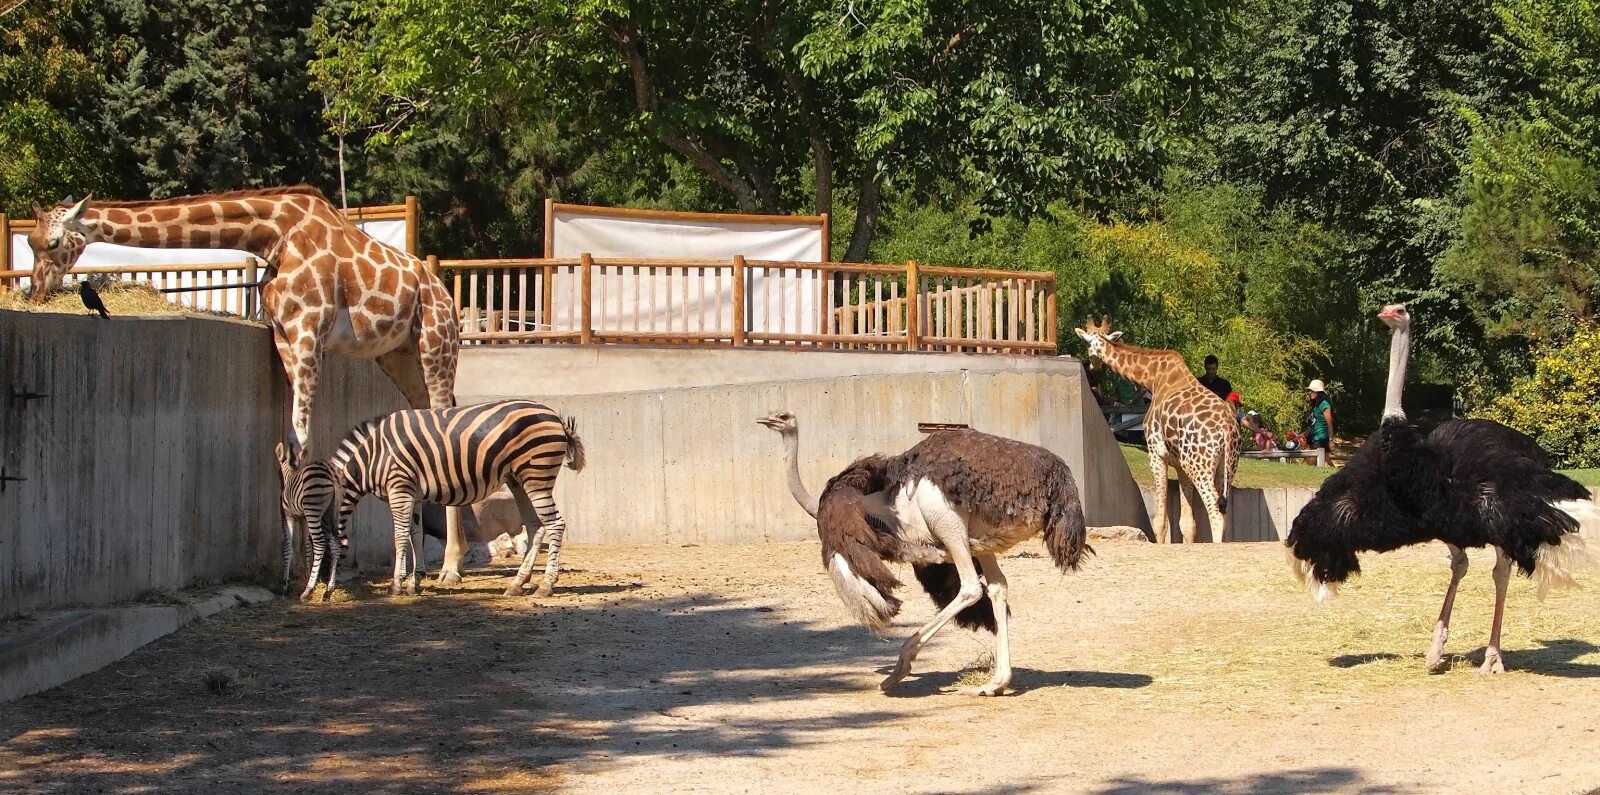 Посетив зоопарк мной были сделаны фотографии животных. Зоопарк Анталии. Зоопарк в Стамбуле. Беловежская пуща зоопарк. Хайфский зоопарк.